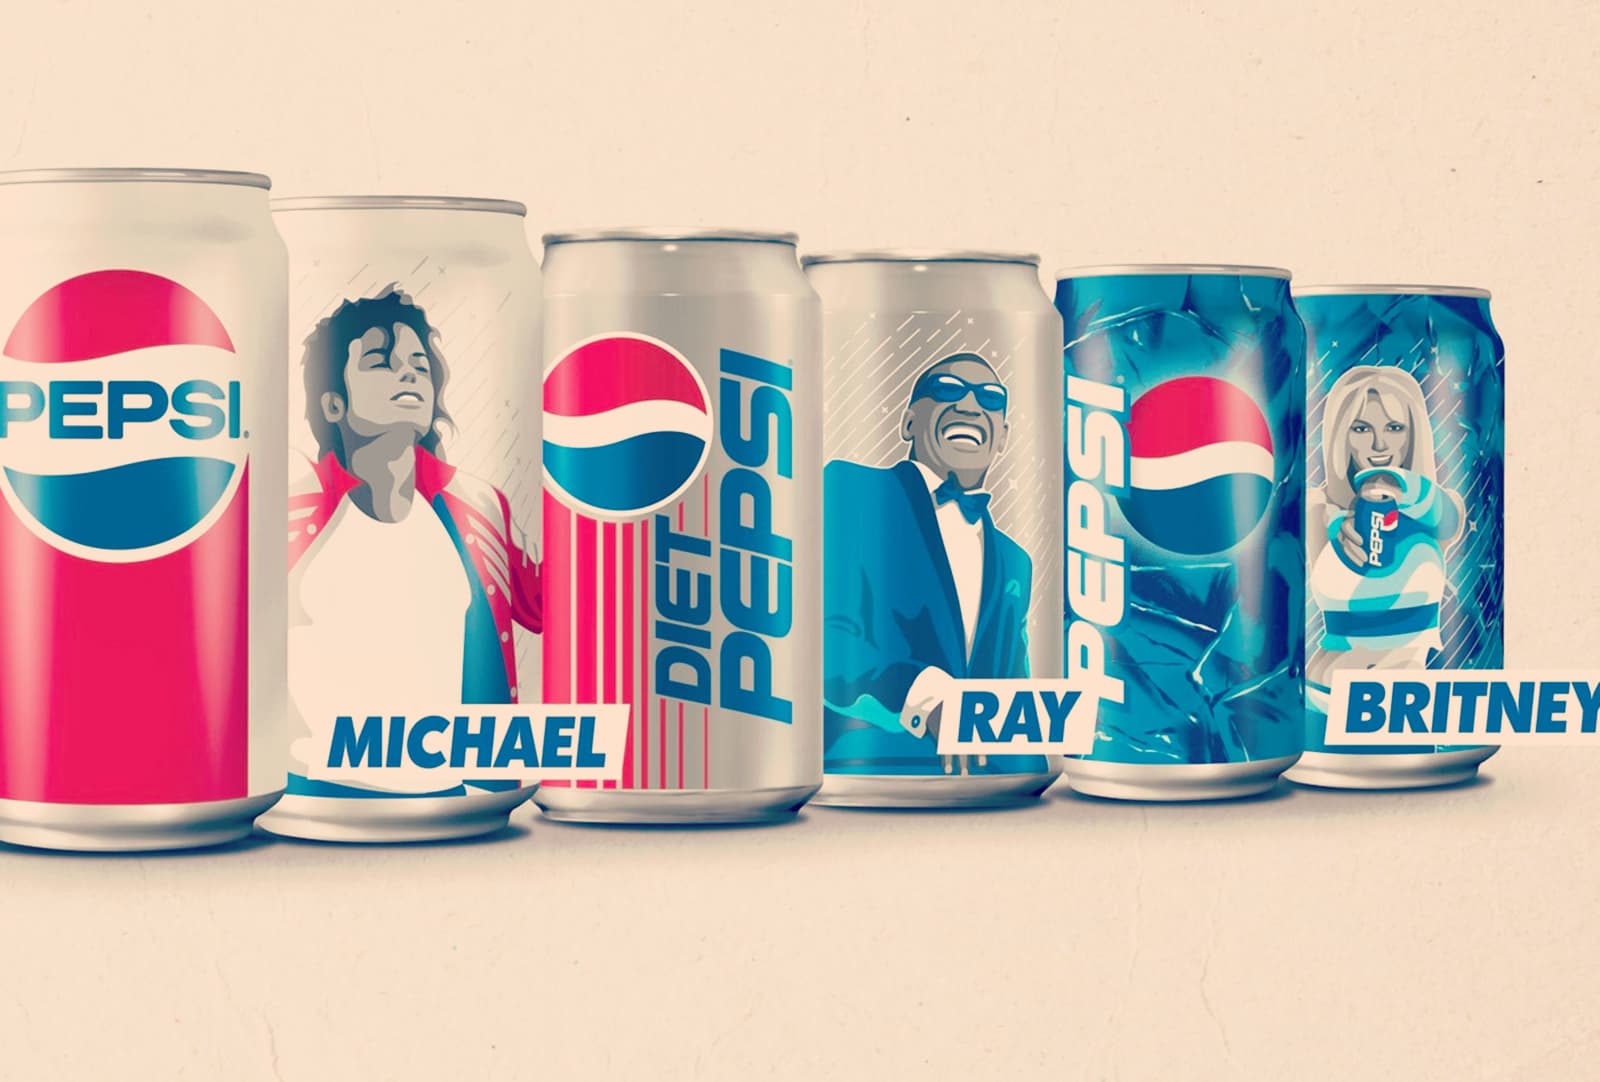 Pepsi revive leyendas musicales en sus latas